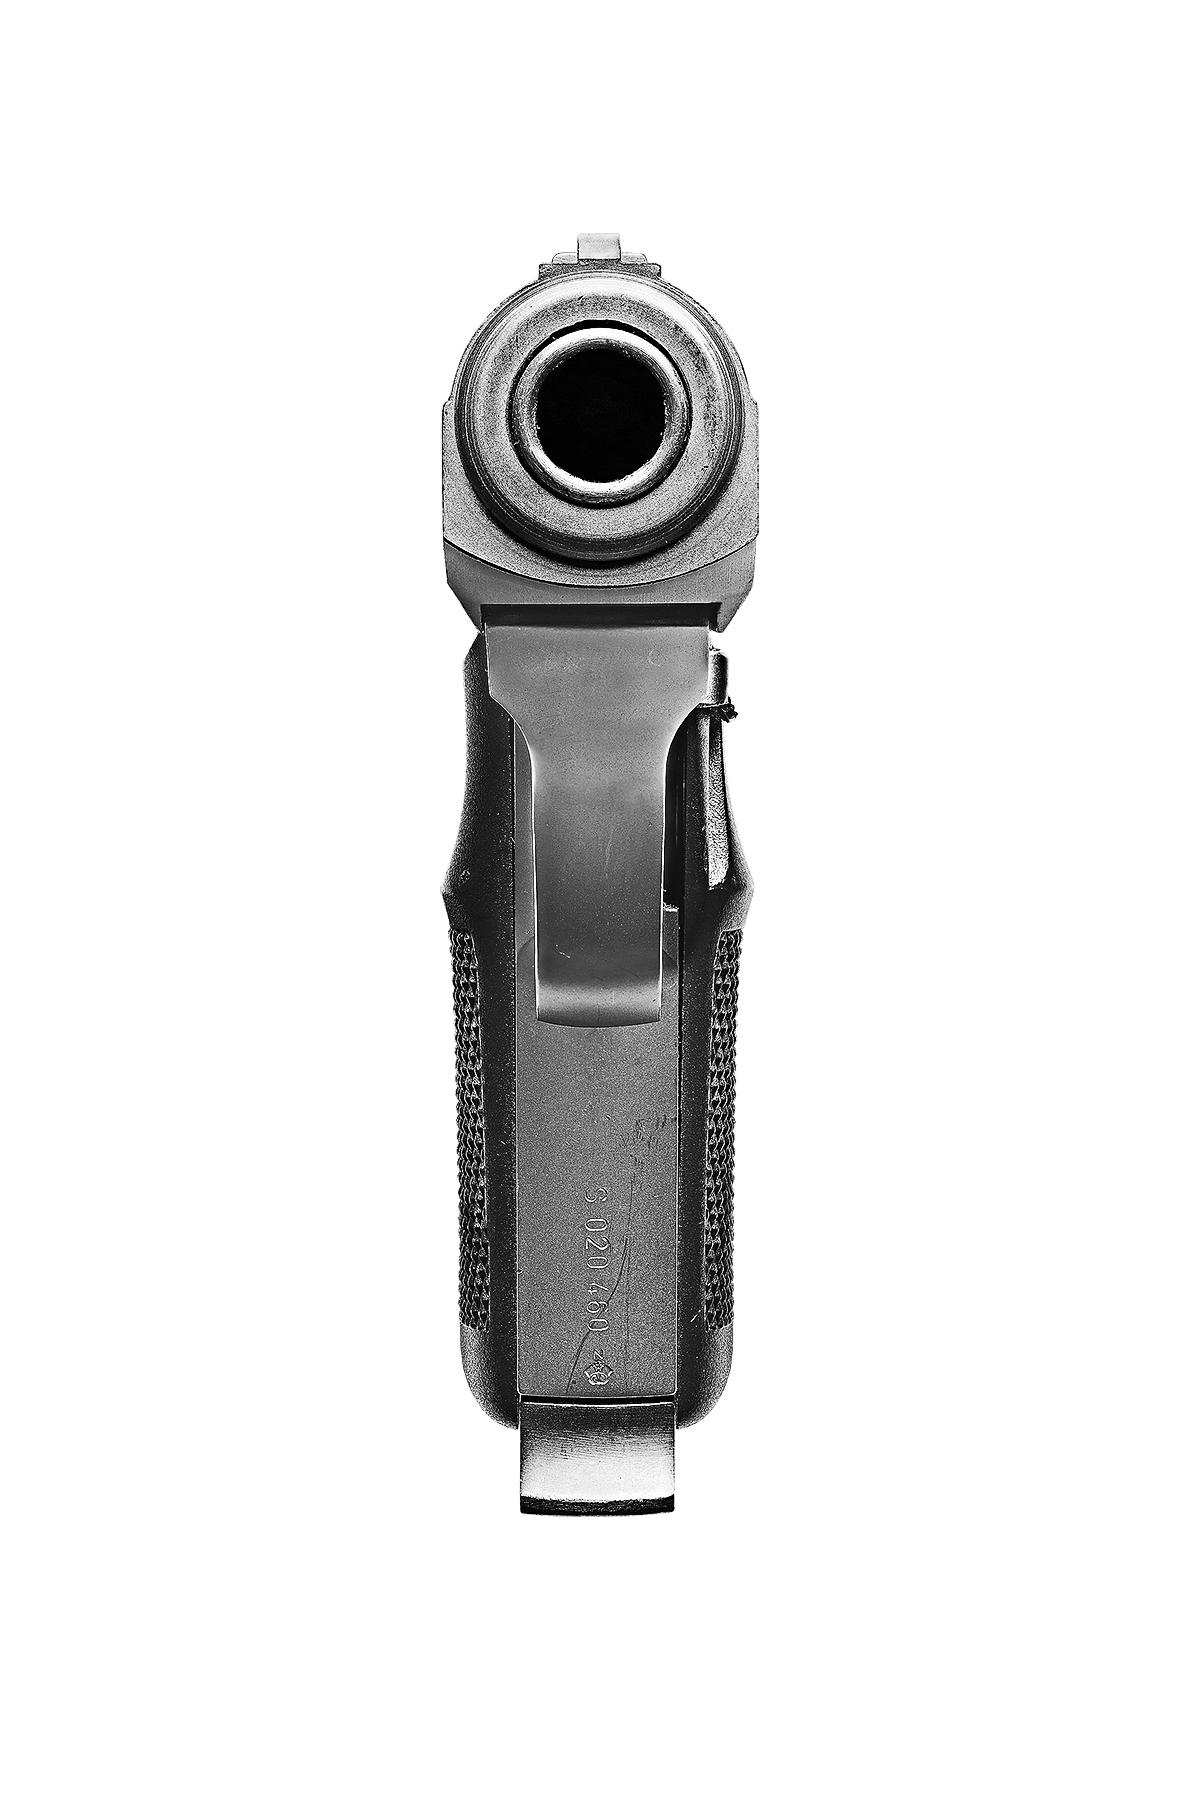 Walther PPK
C.C.I.C. / Impression pigmentaire d'archives
Edition de 20 exemplaires par format
Tailles disponibles :
36 x 72 pouces
48 x 96 pouces

Dans Point Blank, l'agrandissement des armes de poing par Lusztyk anthropomorphise et abstrait son